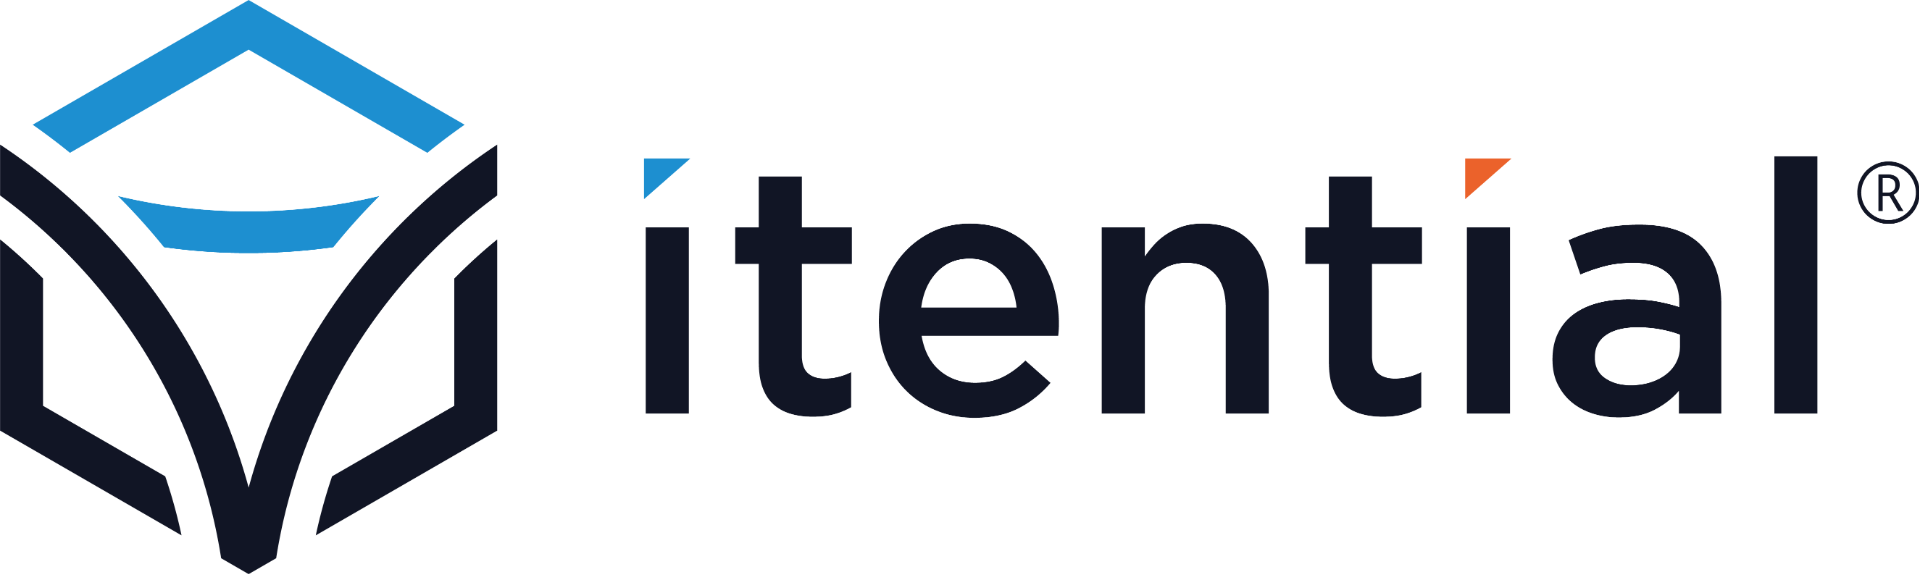 Partner logo for Itential